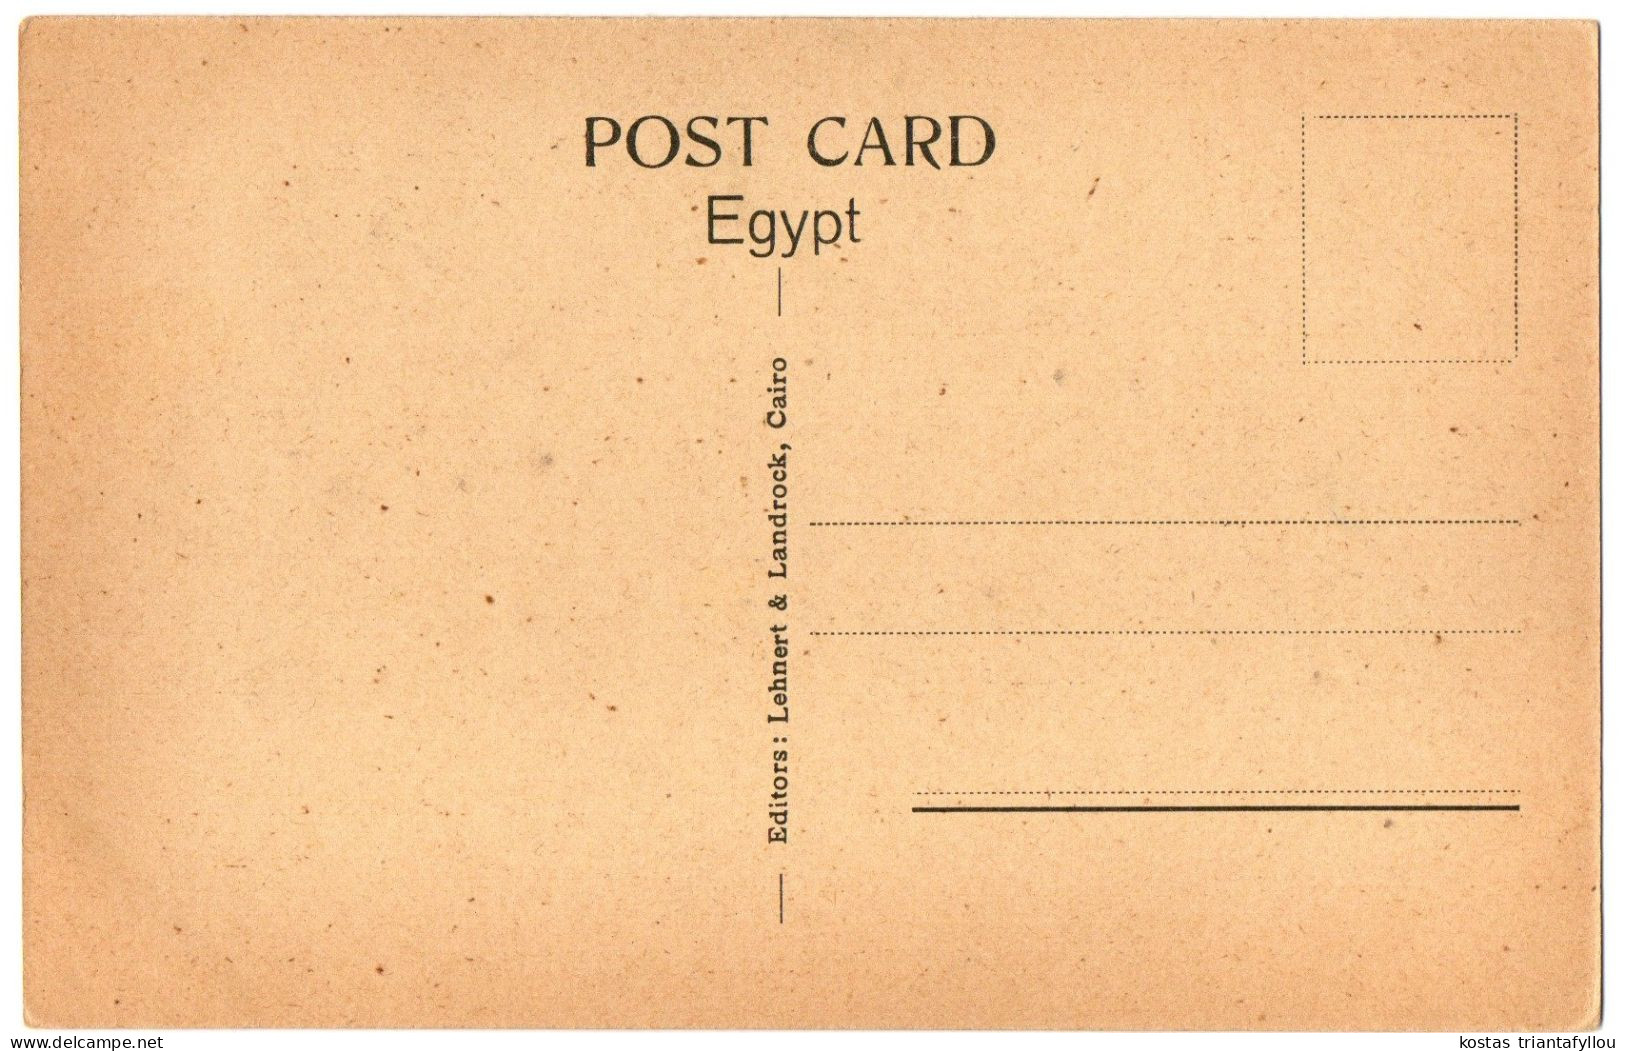 4.1.4 EGYPT, CAIRO, OPERA AND STATUE OF IBRAHIM PASHA, POSTCARD - Cairo